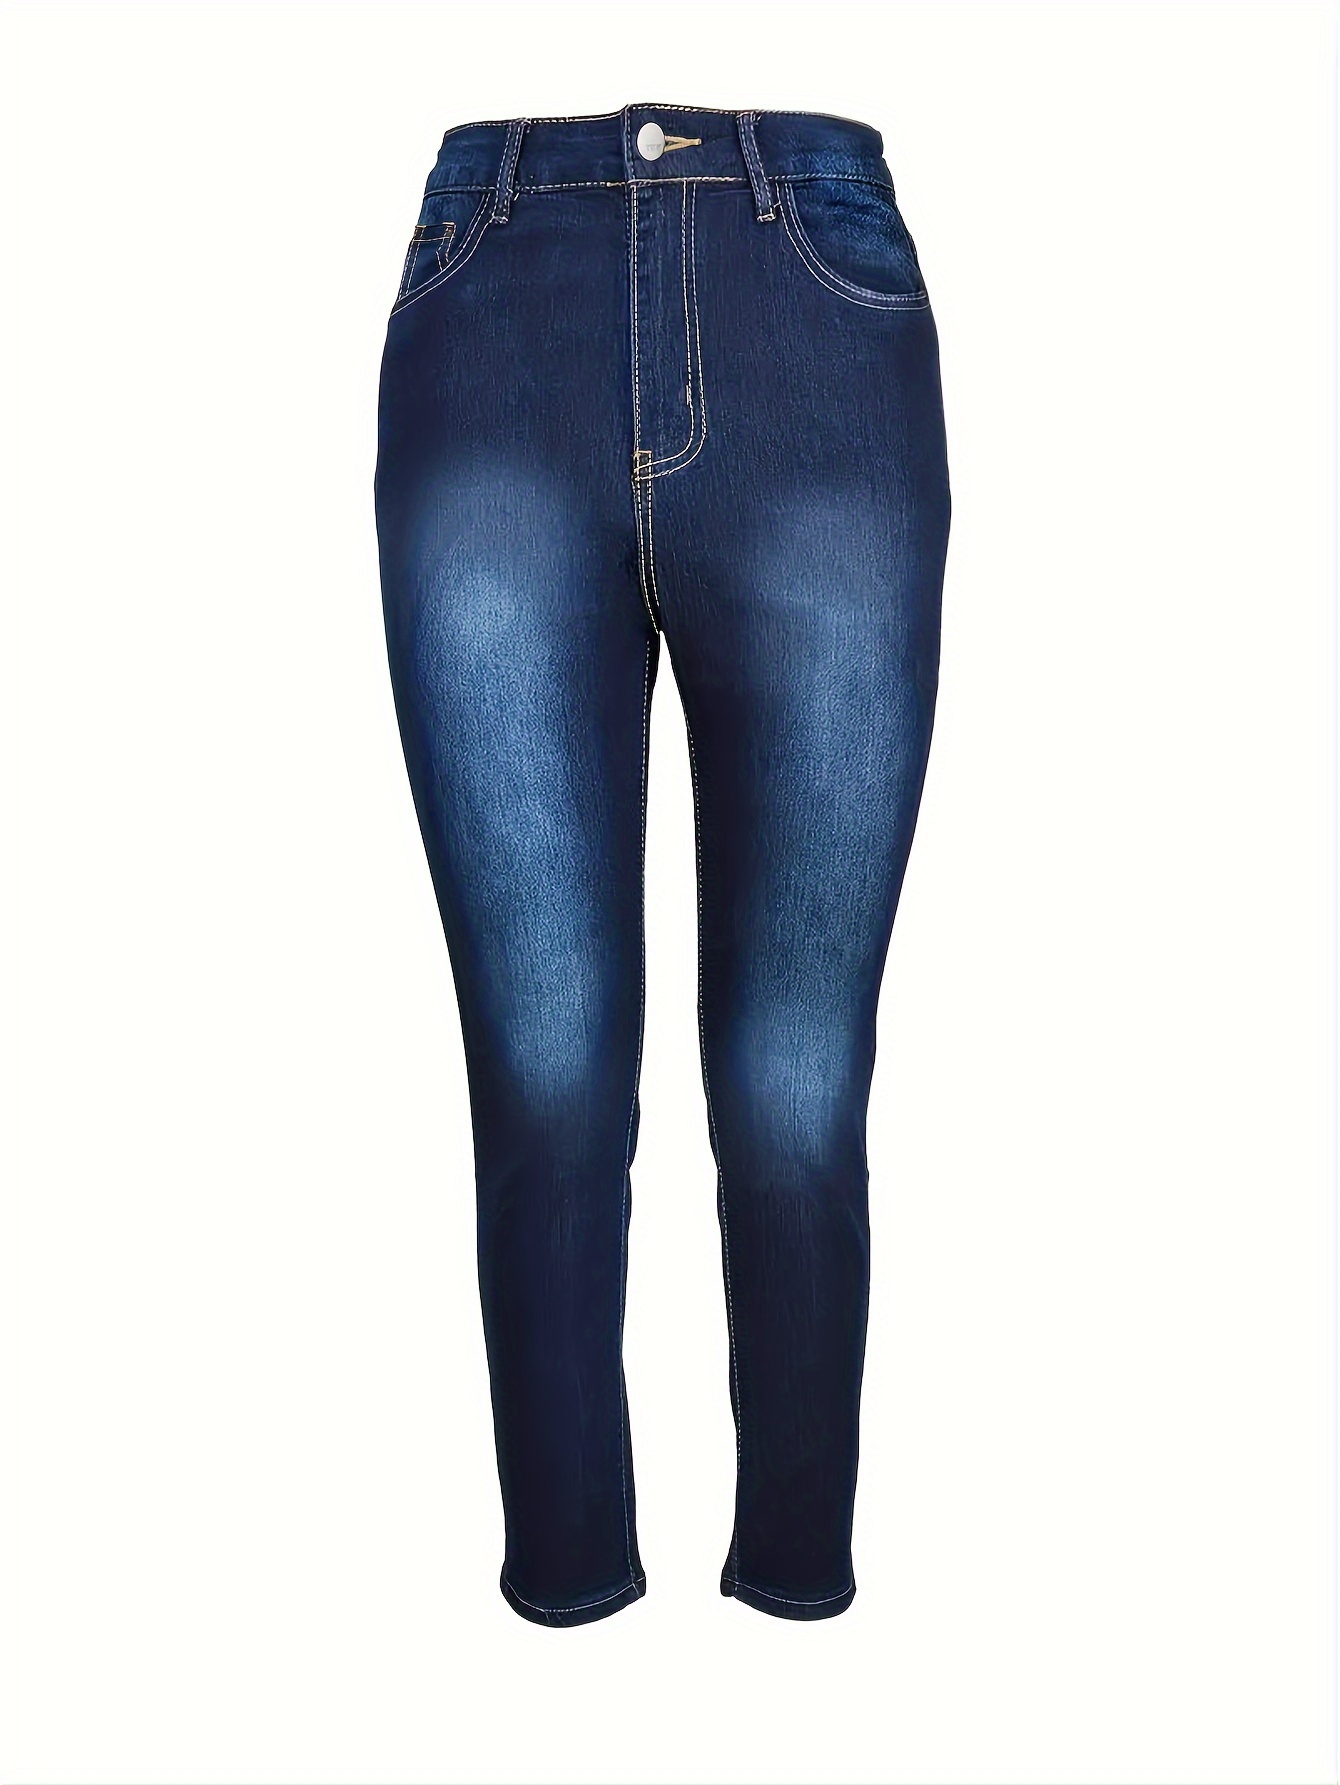 New Contrast Color Denim Jeans Women  Curvy women jeans, Casual denim pants,  Curvy jeans